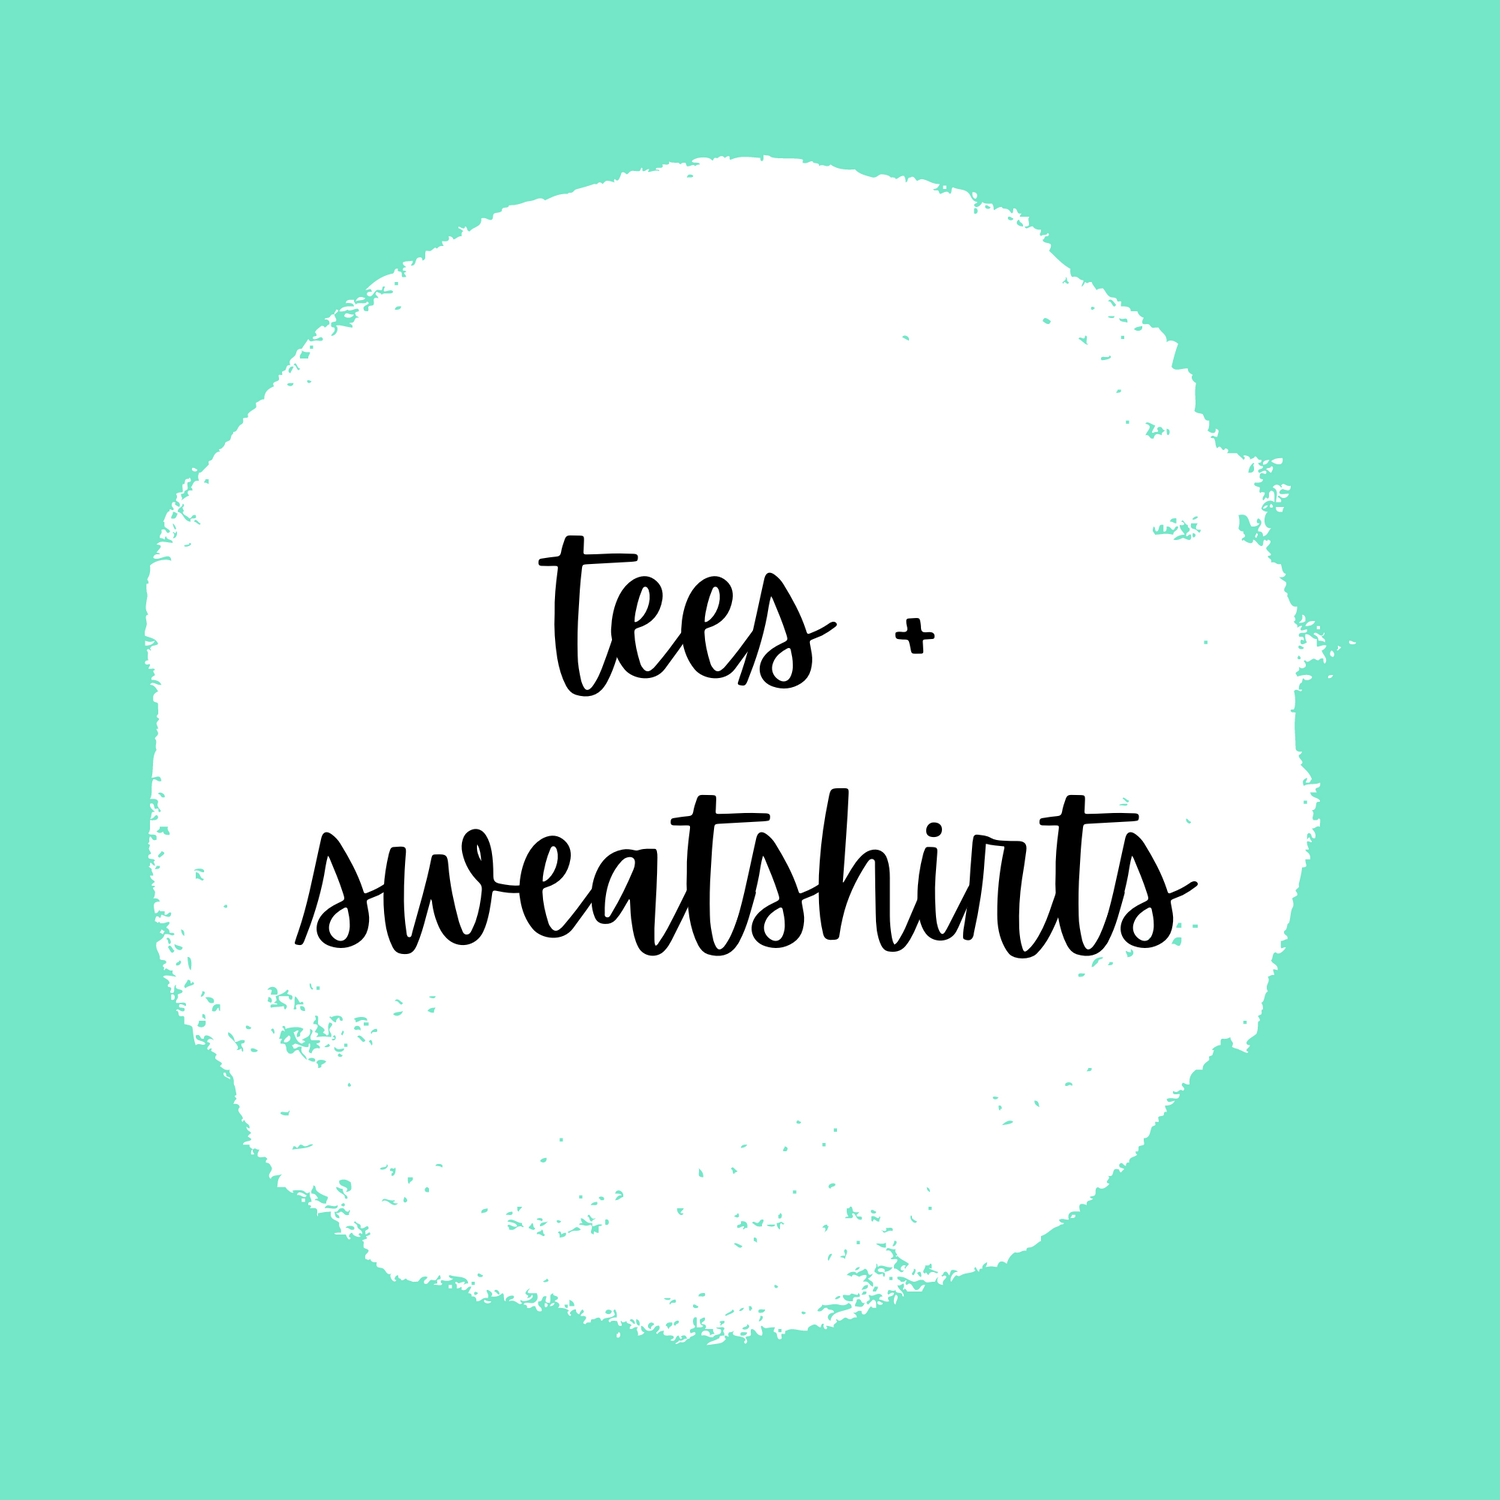 Tees + Sweatshirts